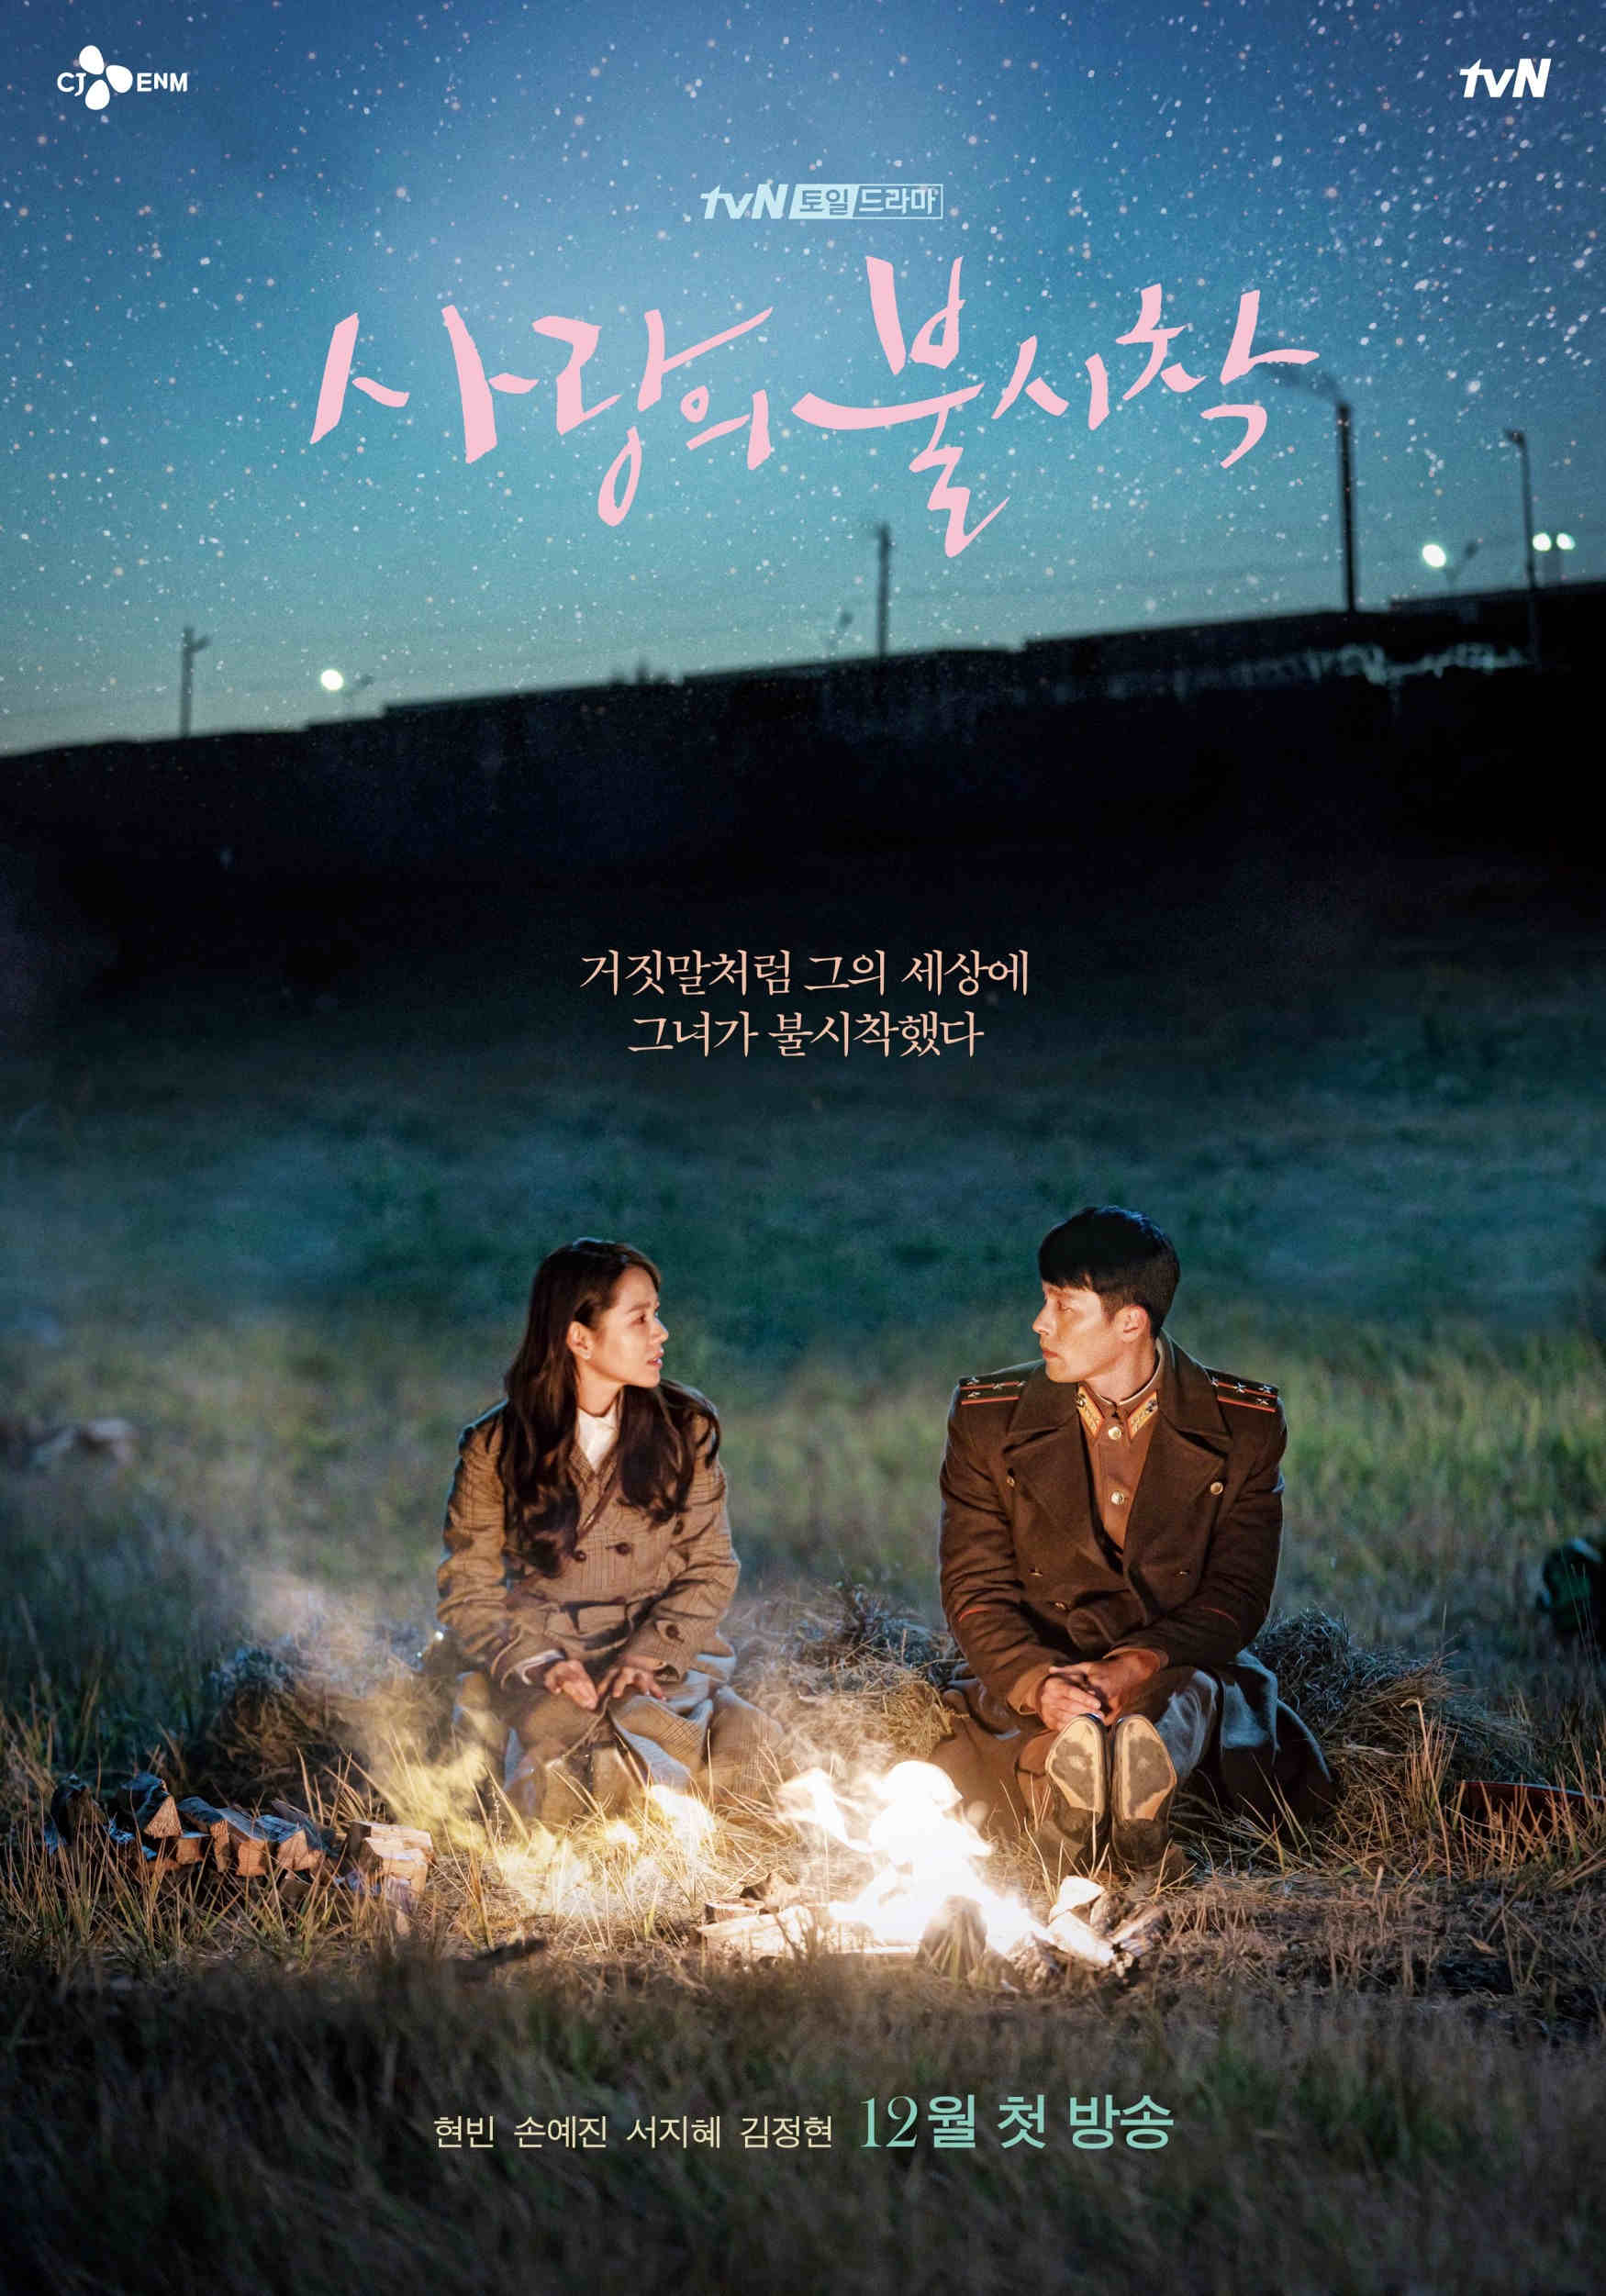 Best Korean dramas 2020 - Crash Landing on You